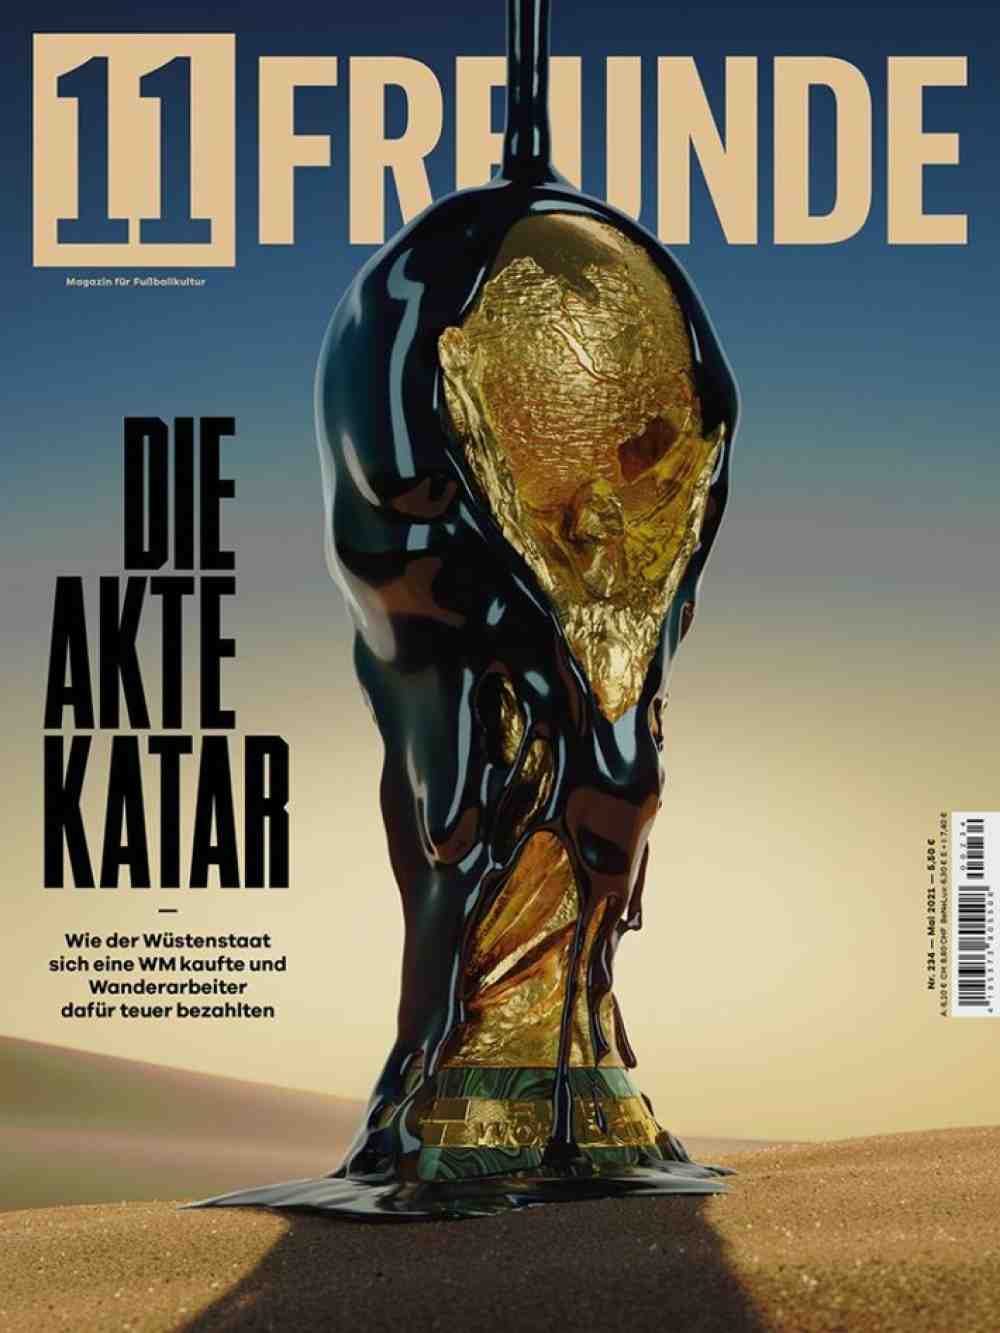 Cover des Jahres 2021, »11Freunde« öffnet die Akte Katar